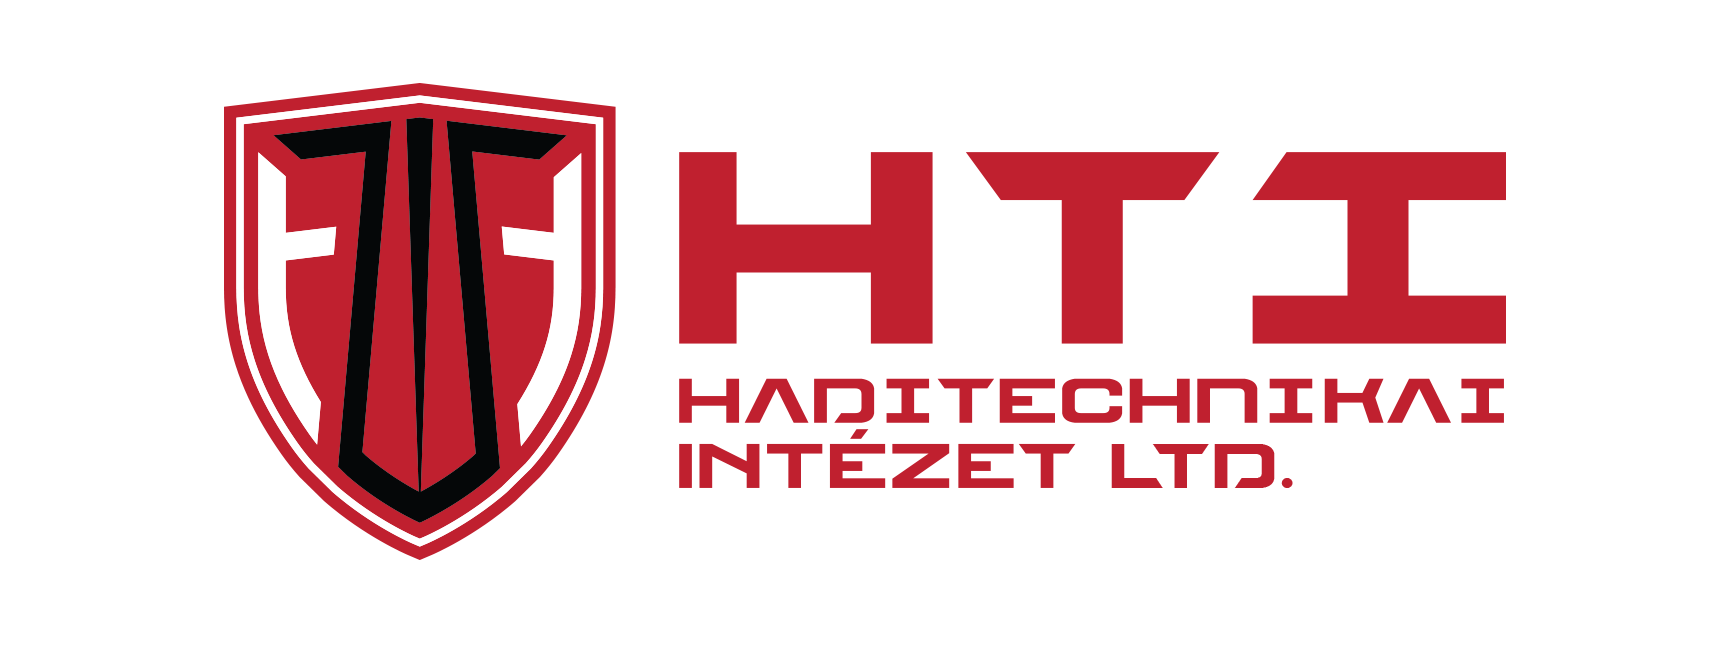 HTI Ltd.